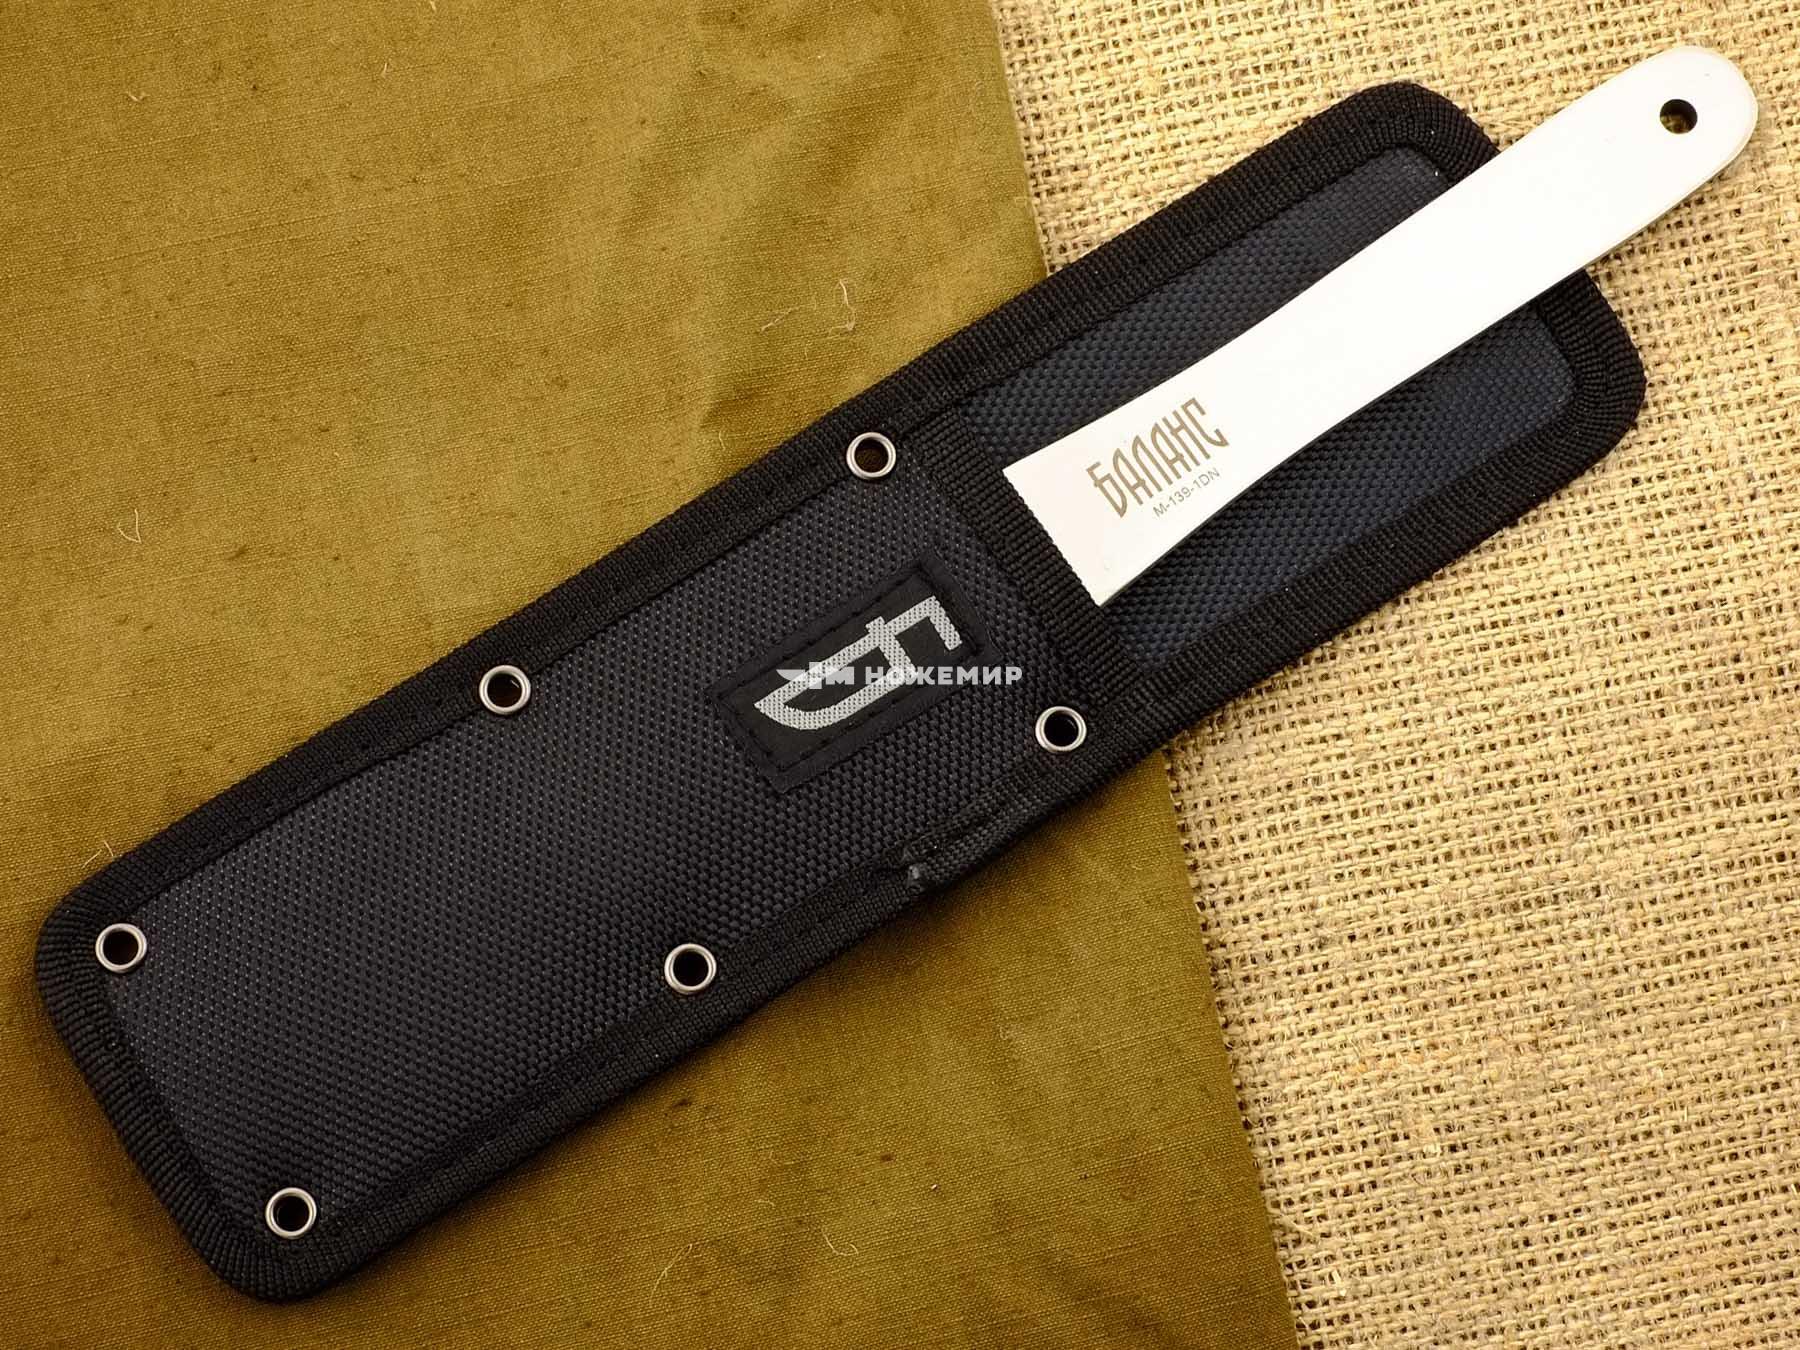 Нож для спортивного метания без заточки Баланс M-139-1DN в чехле на ремень